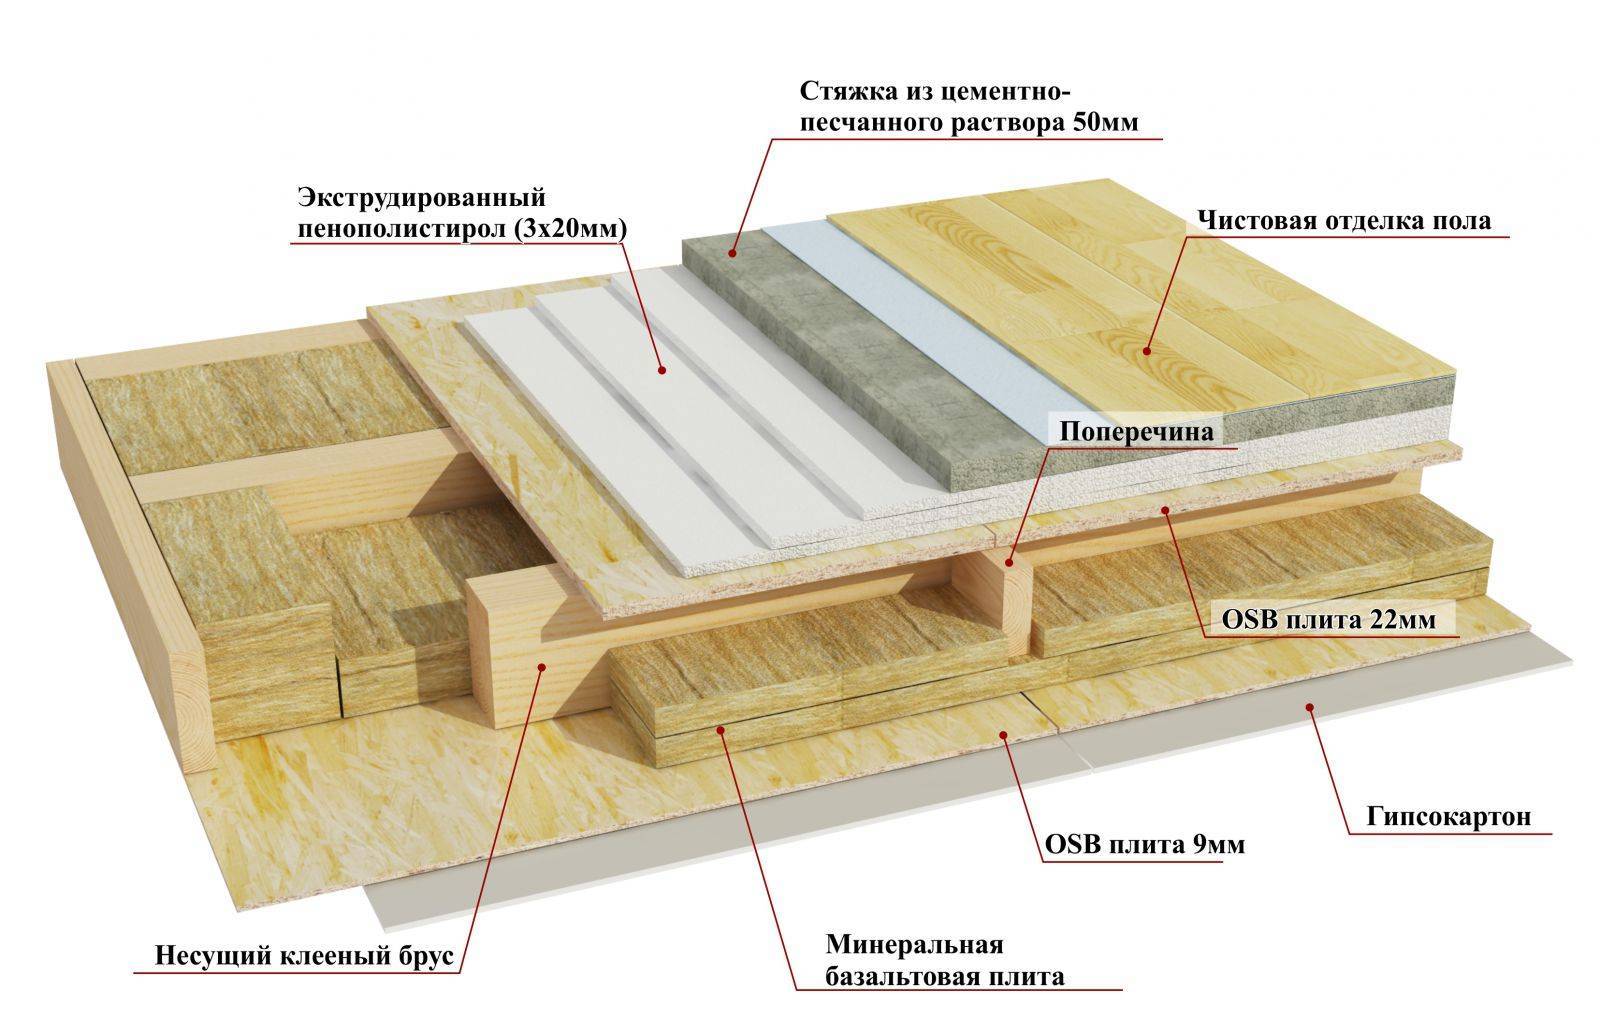 Теплые полы в деревянном доме: как сделать своими руками, устройство по лагам с подогревом, в частном брусовом, конструкция